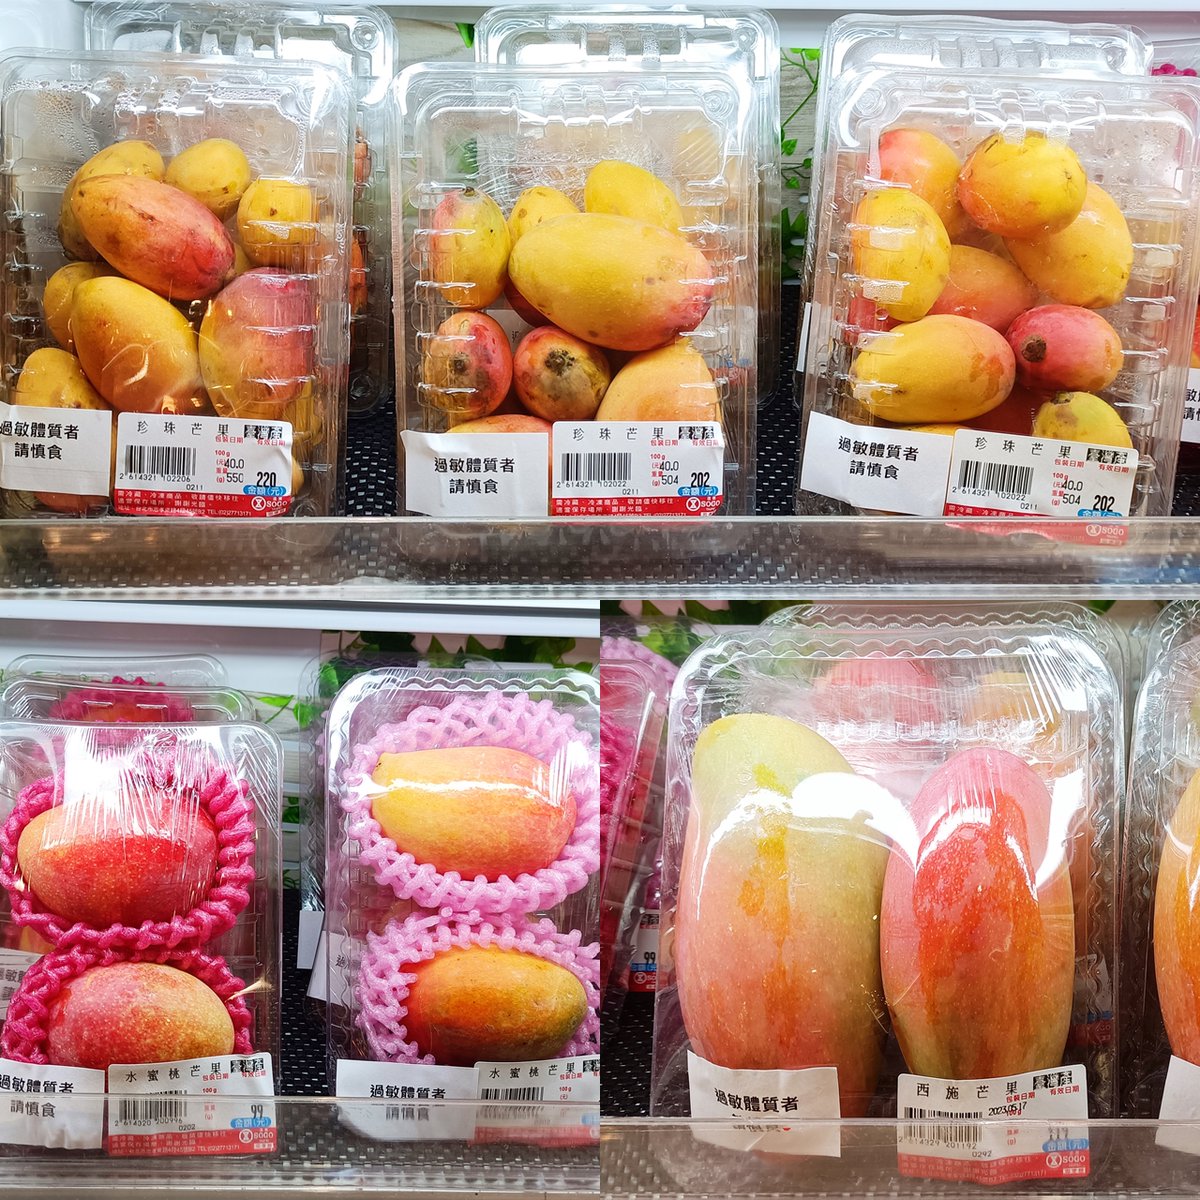 【台湾フルーツ真っ盛り】 台湾の果物を楽しむなら、果物屋さんもいいですが、デパートの中にあるスーパーもおすすめです 見たことも聞いたこともない新種のマンゴーに出逢えたり、旬のフルーツをいち早く買えますよ この時期の台湾は夏の台湾フルーツ好きには天国だと思い